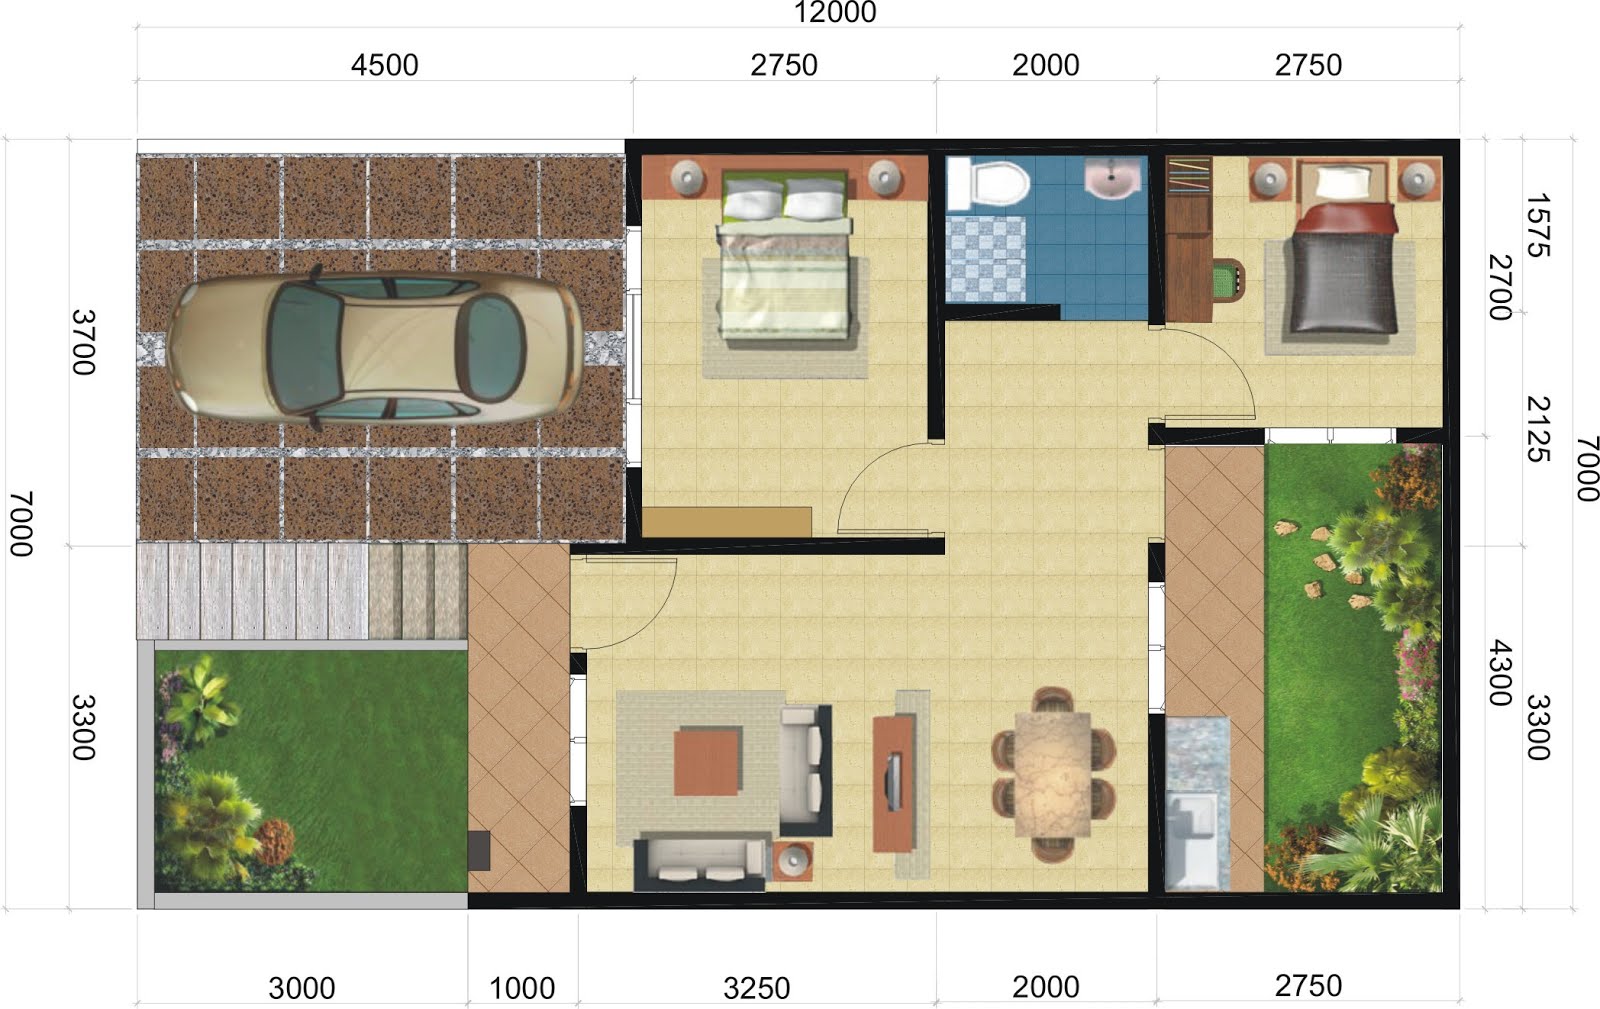  Denah Rumah Minimalis 2 Lantai Luas Tanah 90m2 Desain 